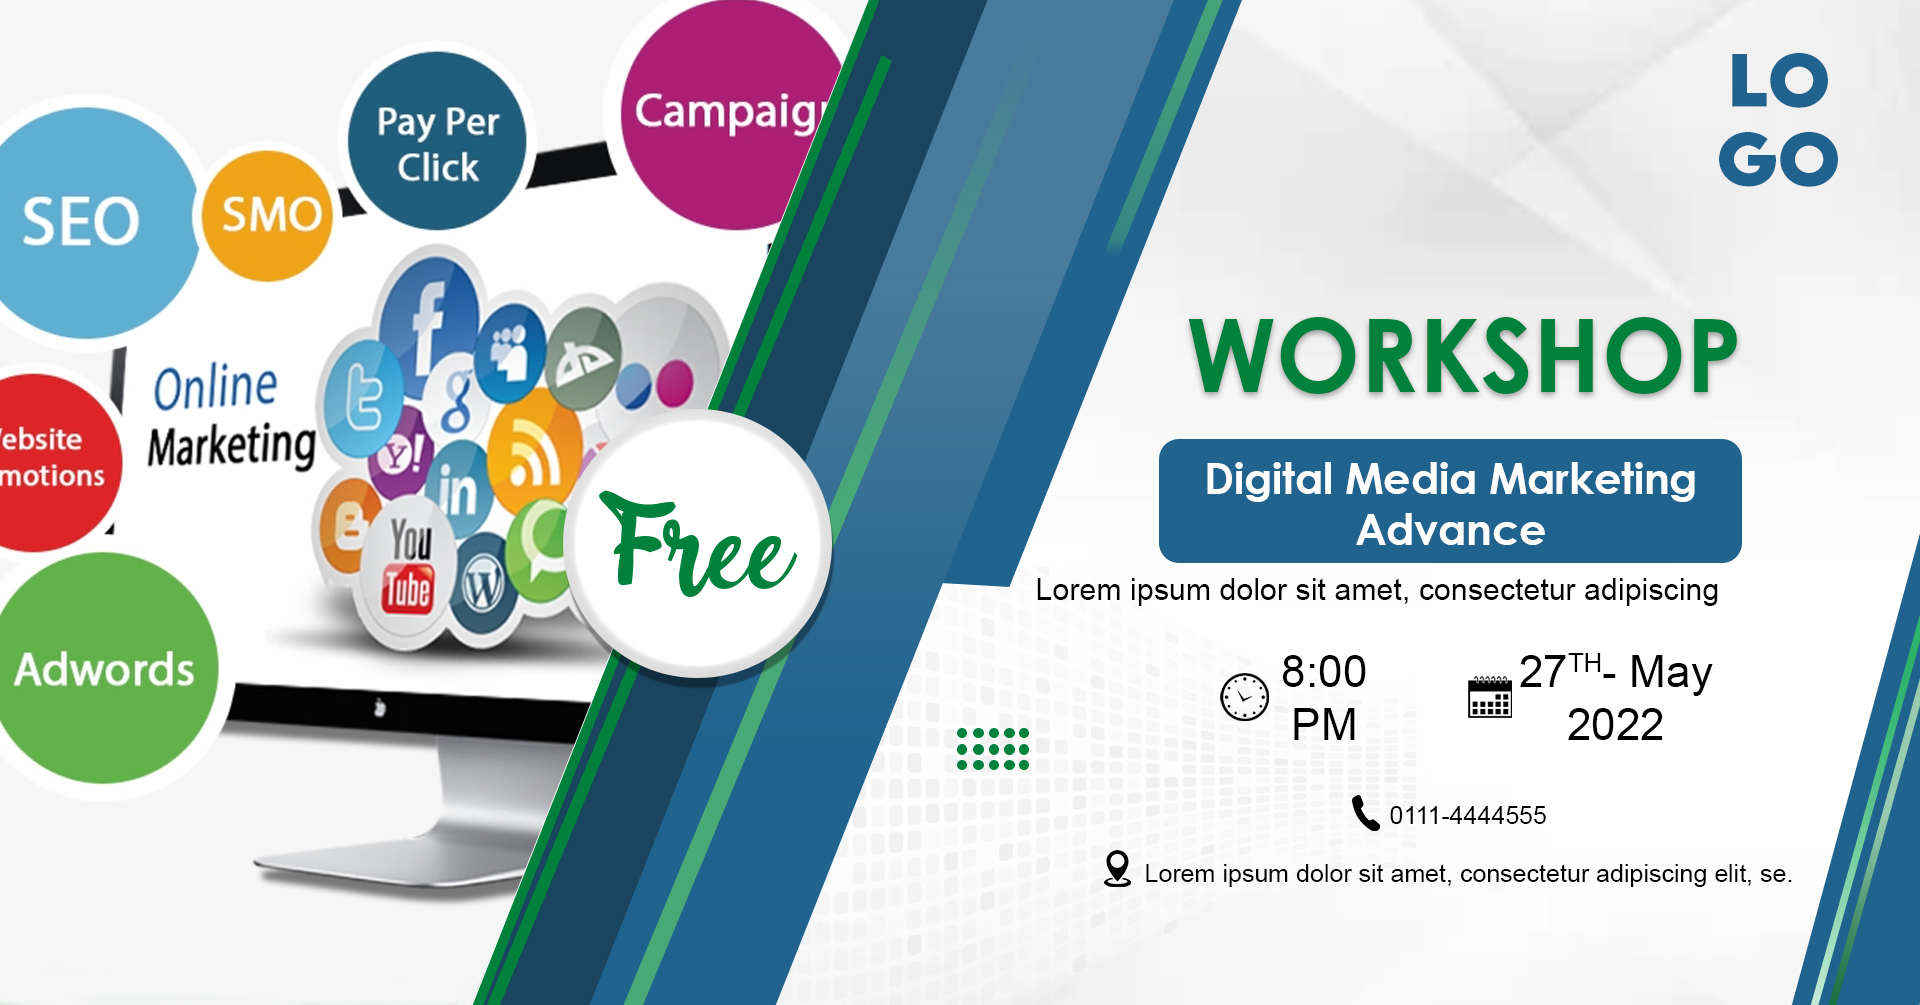 Digital Marketing workshop Facebook Banner cover image.